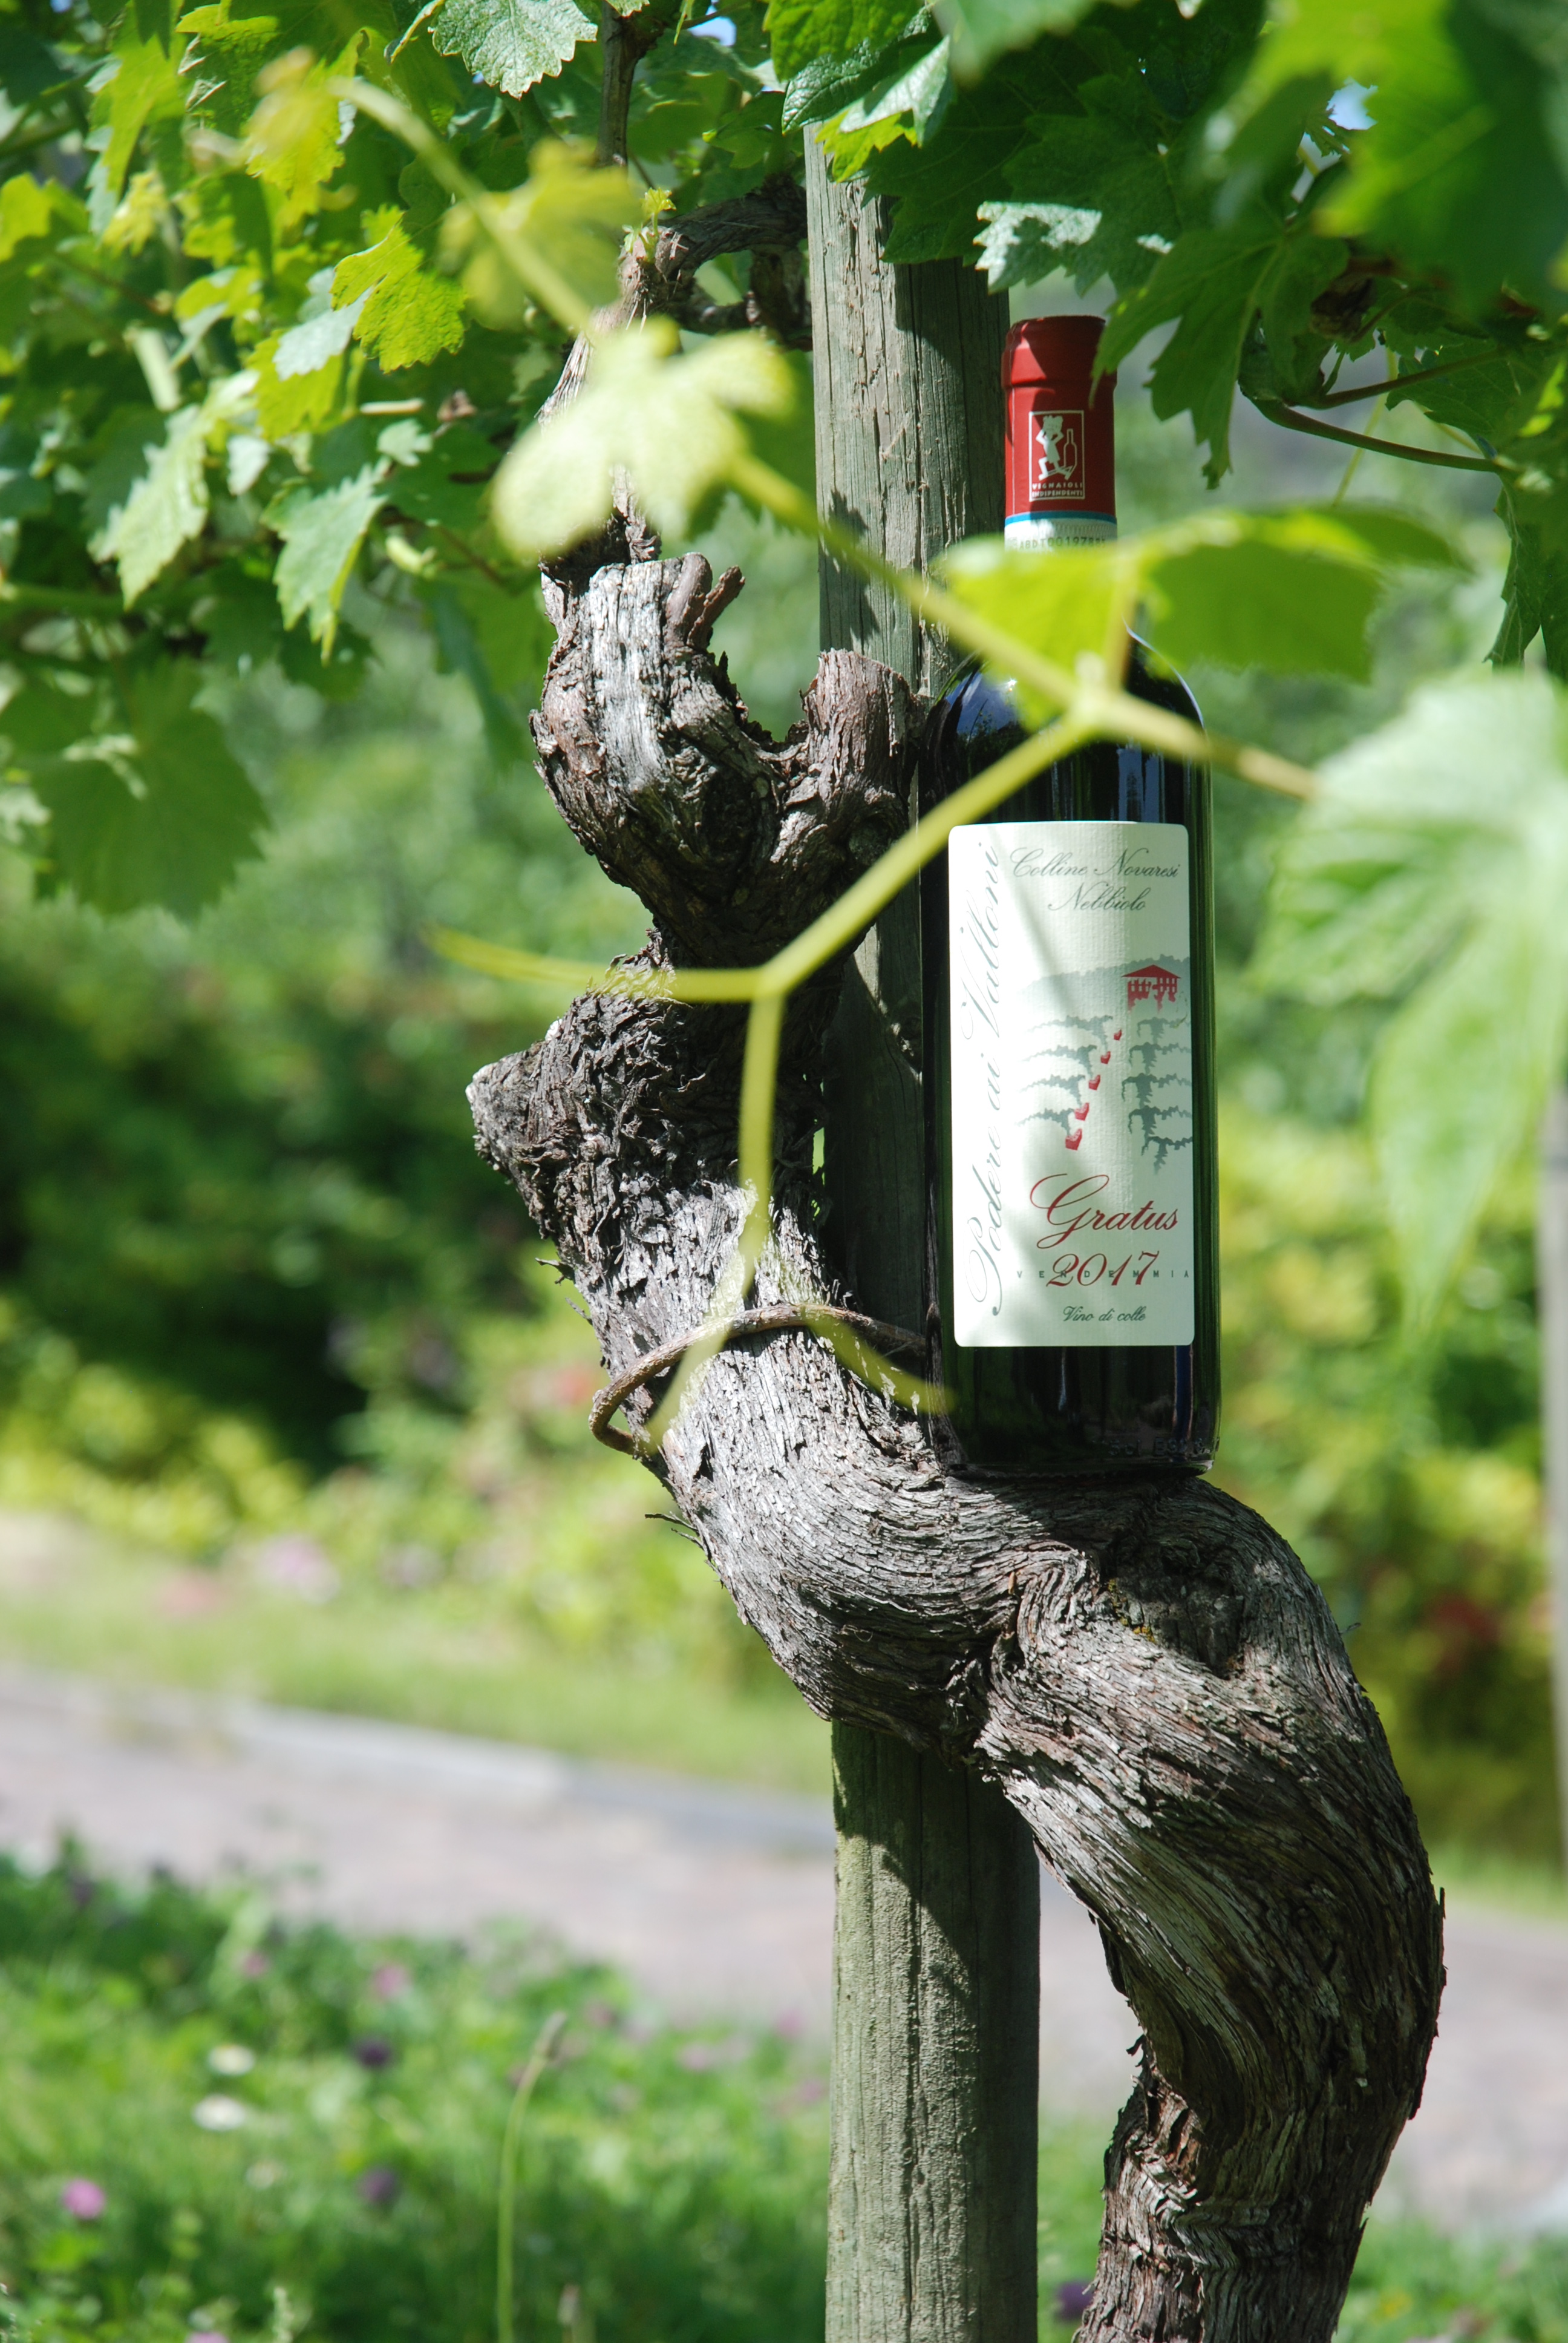 Biologisch wijn: waar zit het verschil met de traditionele wijnbouw?